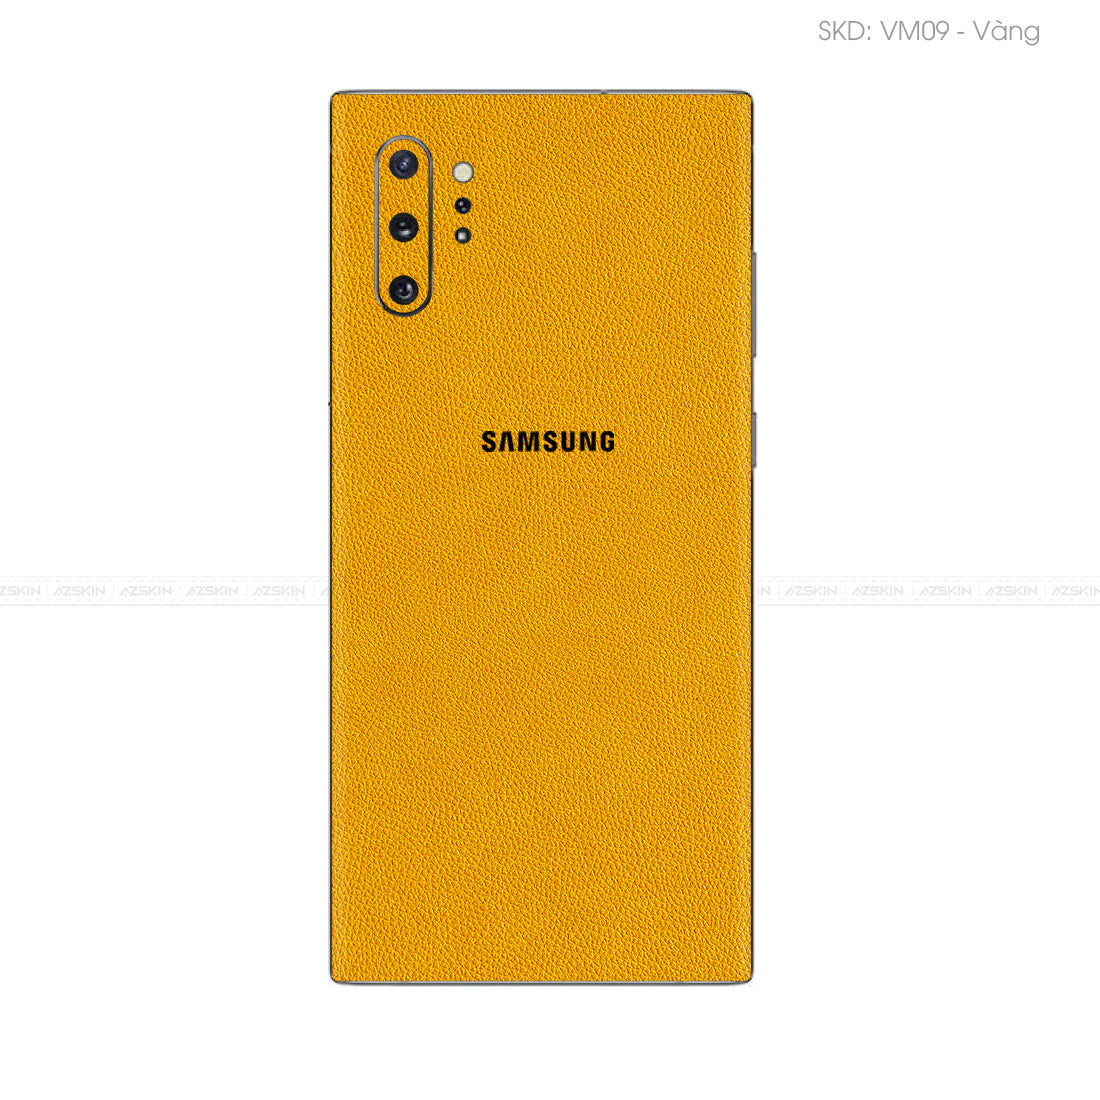 Miếng Dán Da Samsung Note 10 Series Vân Mil Vàng | VM09